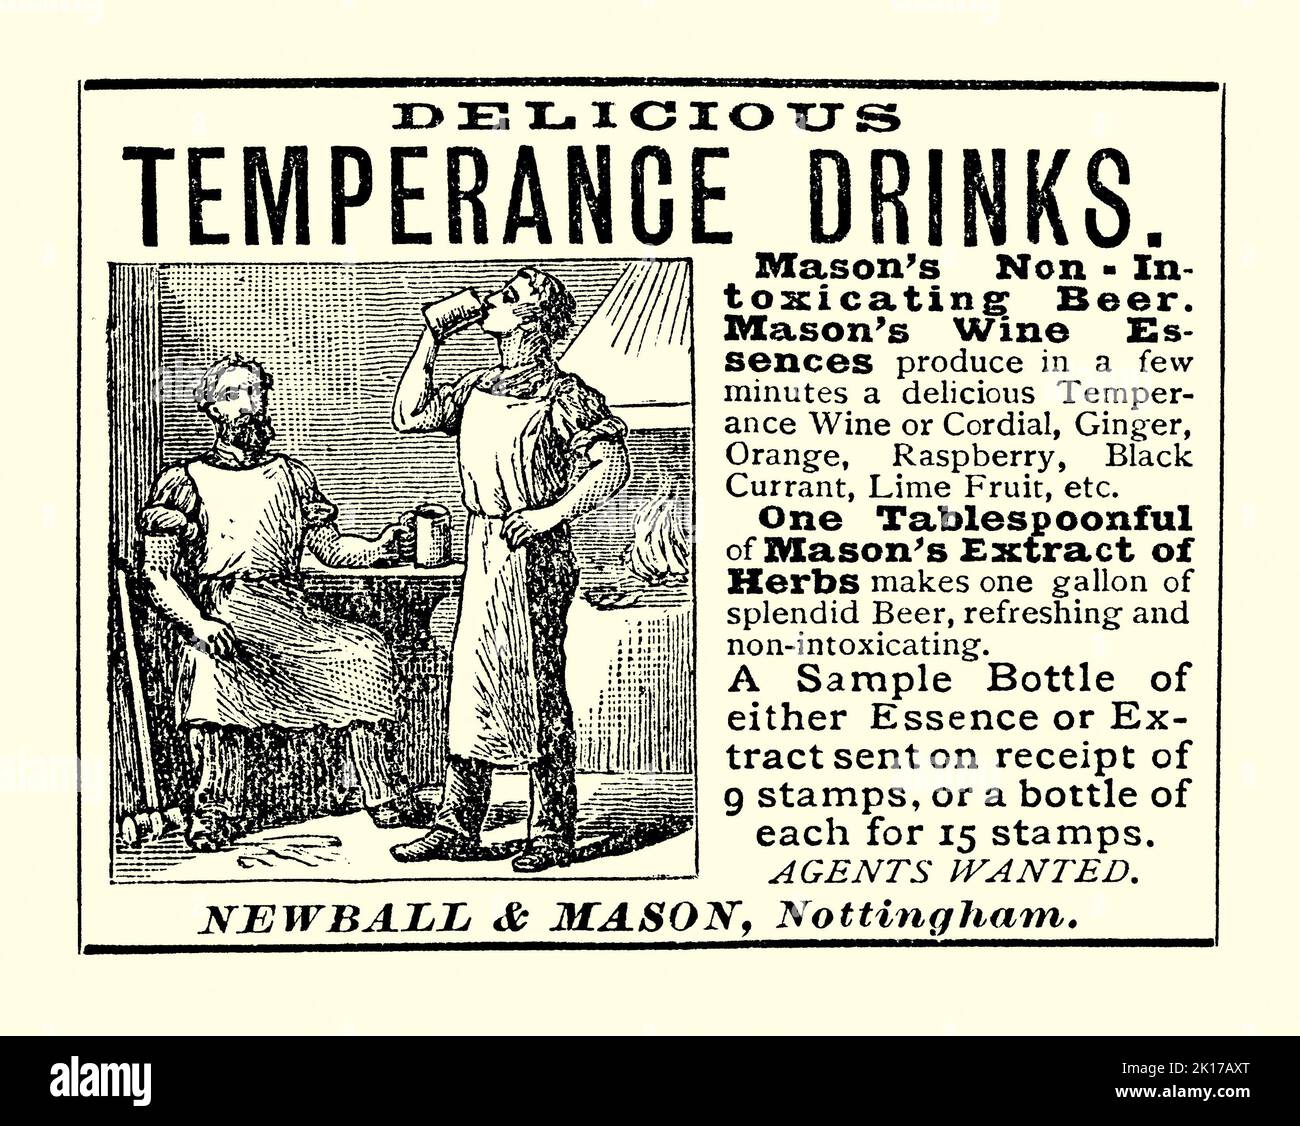 Eine alte viktorianische Werbung für Temperanzgetränke, hergestellt von Newball und Mason aus Nottingham, Nottinghamshire, England, Großbritannien. Es stammt aus einer Zeitschrift von 1890. Zu den Getränken gehören Fruchtcordials und ‘Weine’ sowie Kräuterextrakte, die ein nicht-berauschendes ‘Bier’ erzeugen. Die Abbildung zeigt, wie Arbeiter in einer Schmiede einen Drink genießen. Sie tragen schwere Lederschürzen. Die Temperanzbewegung ist eine soziale Bewegung, die Temperenz oder völlige Abstinenz vom Konsum alkoholischer Getränke fördert. Die Bewegung fördert den Teetotalismus und betont die negativen Auswirkungen des Alkohols auf das Leben der Menschen – alte Grafiken aus dem Jahr 1800s. Stockfoto